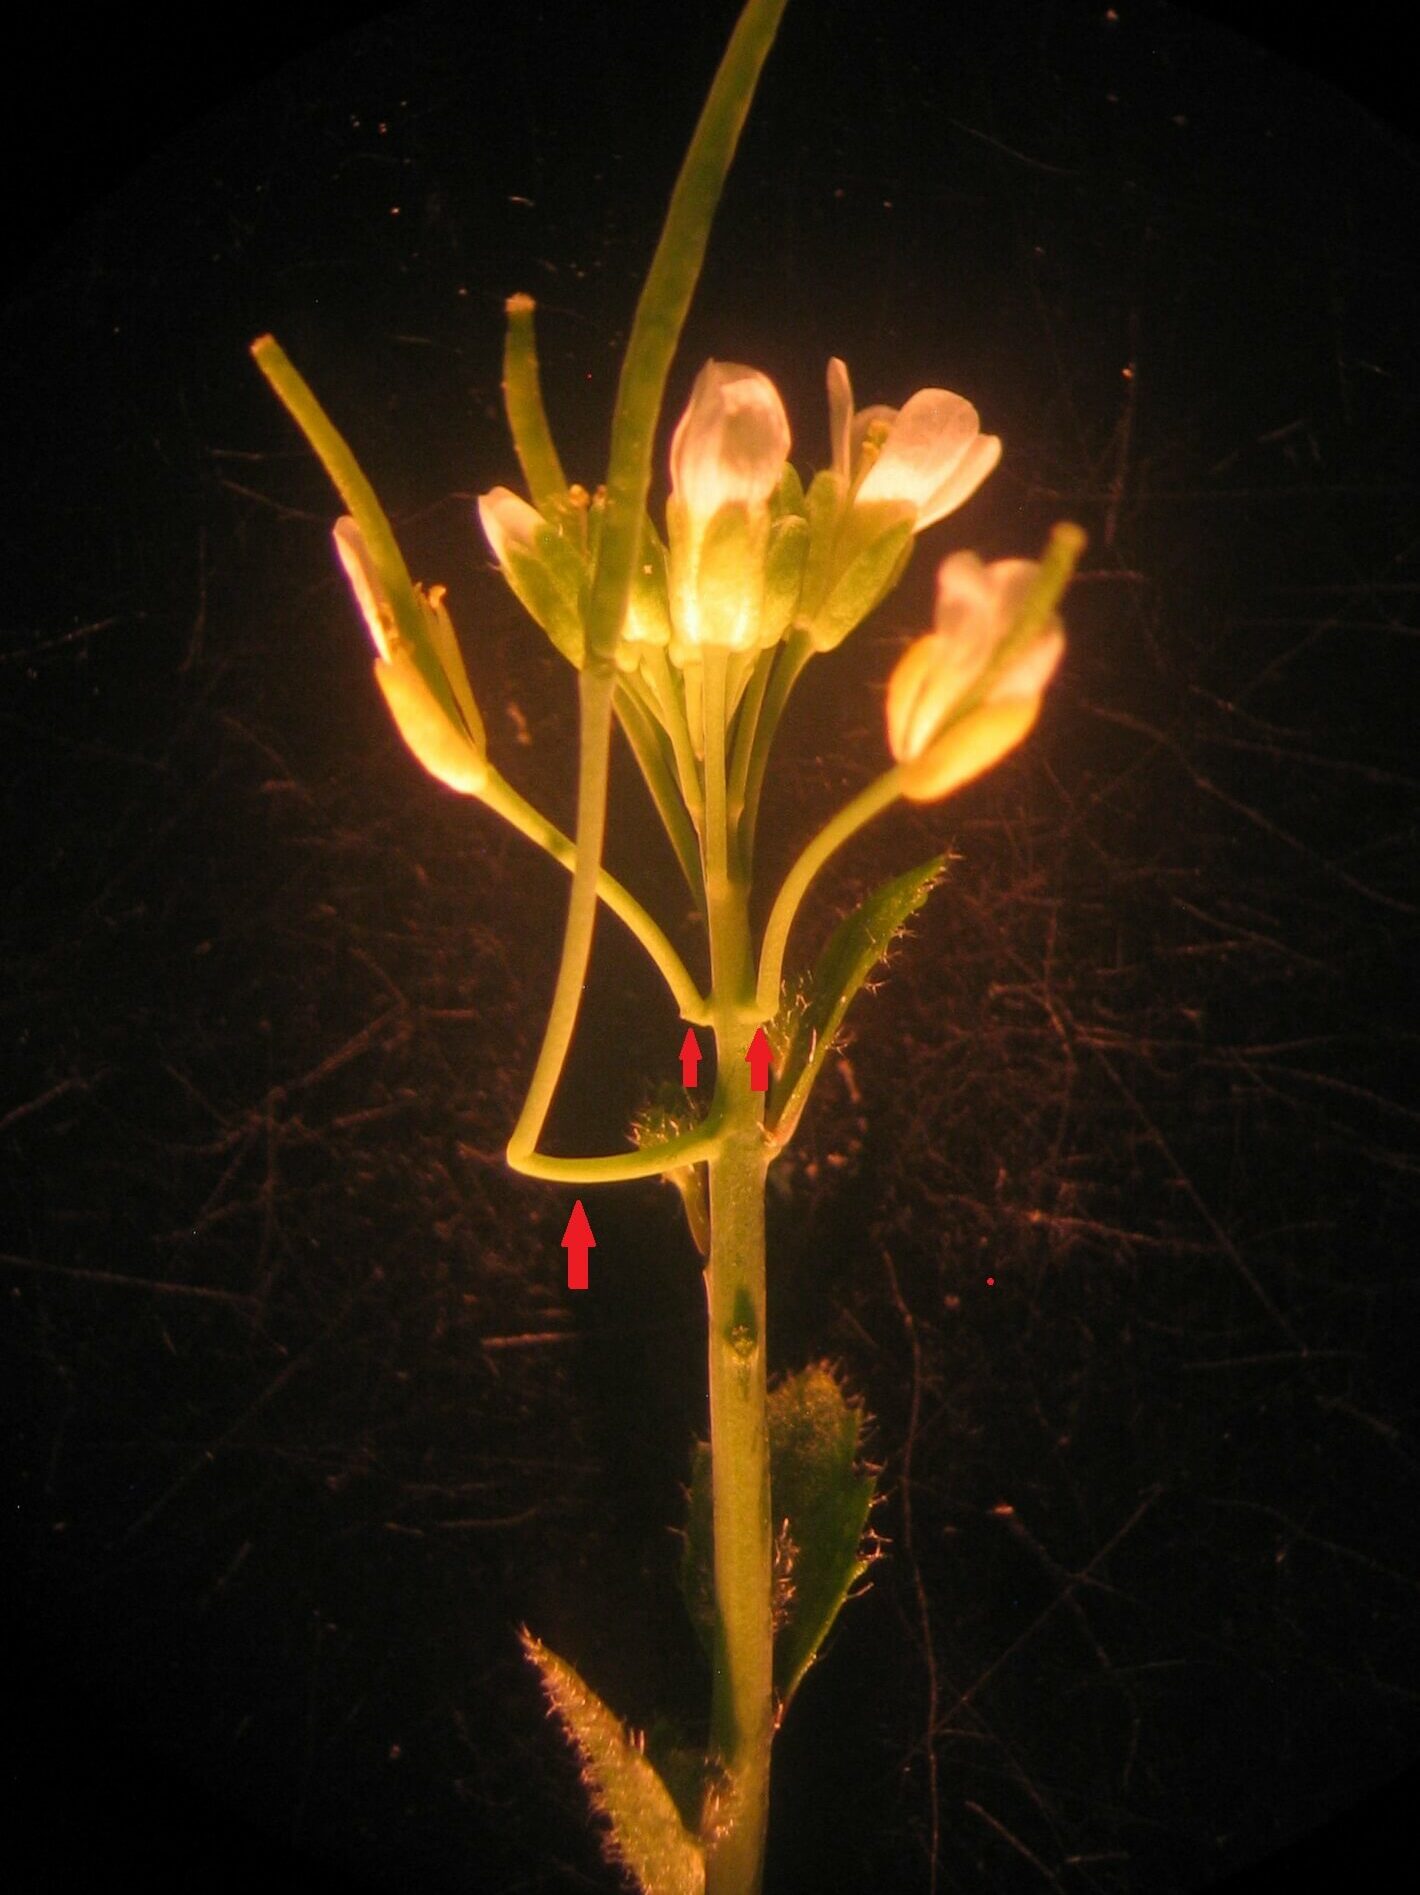 悬臂，因其支撑花茎的悬臂功能而得名，是野生型拟南芥在短日照下延迟开花的结果。